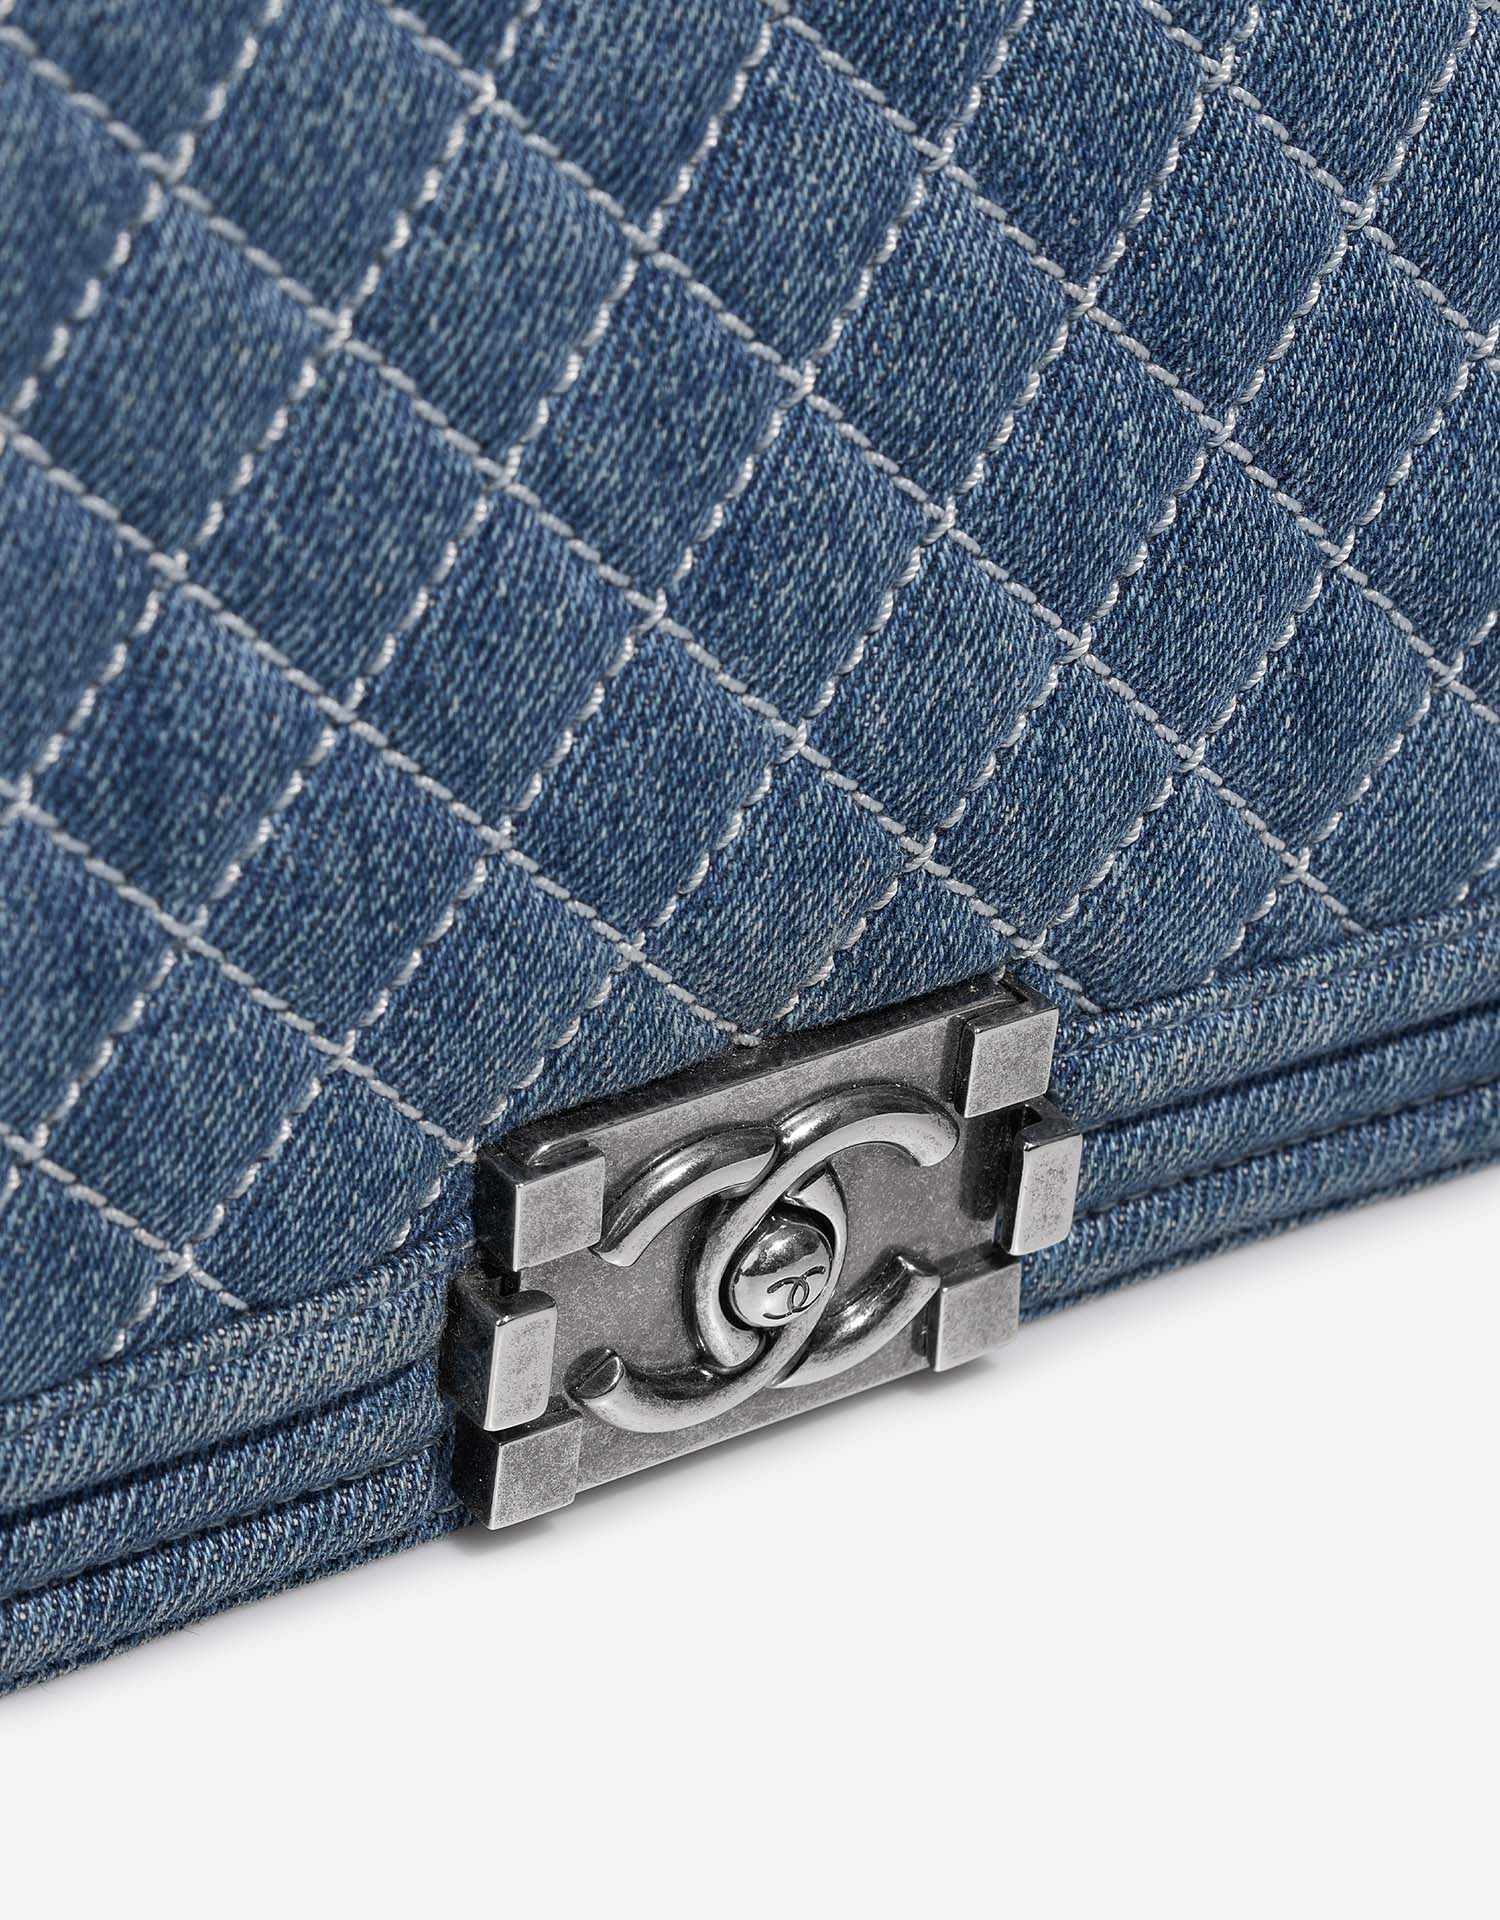 Chanel Boy Large Blue Closing System | Verkaufen Sie Ihre Designer-Tasche auf Saclab.com